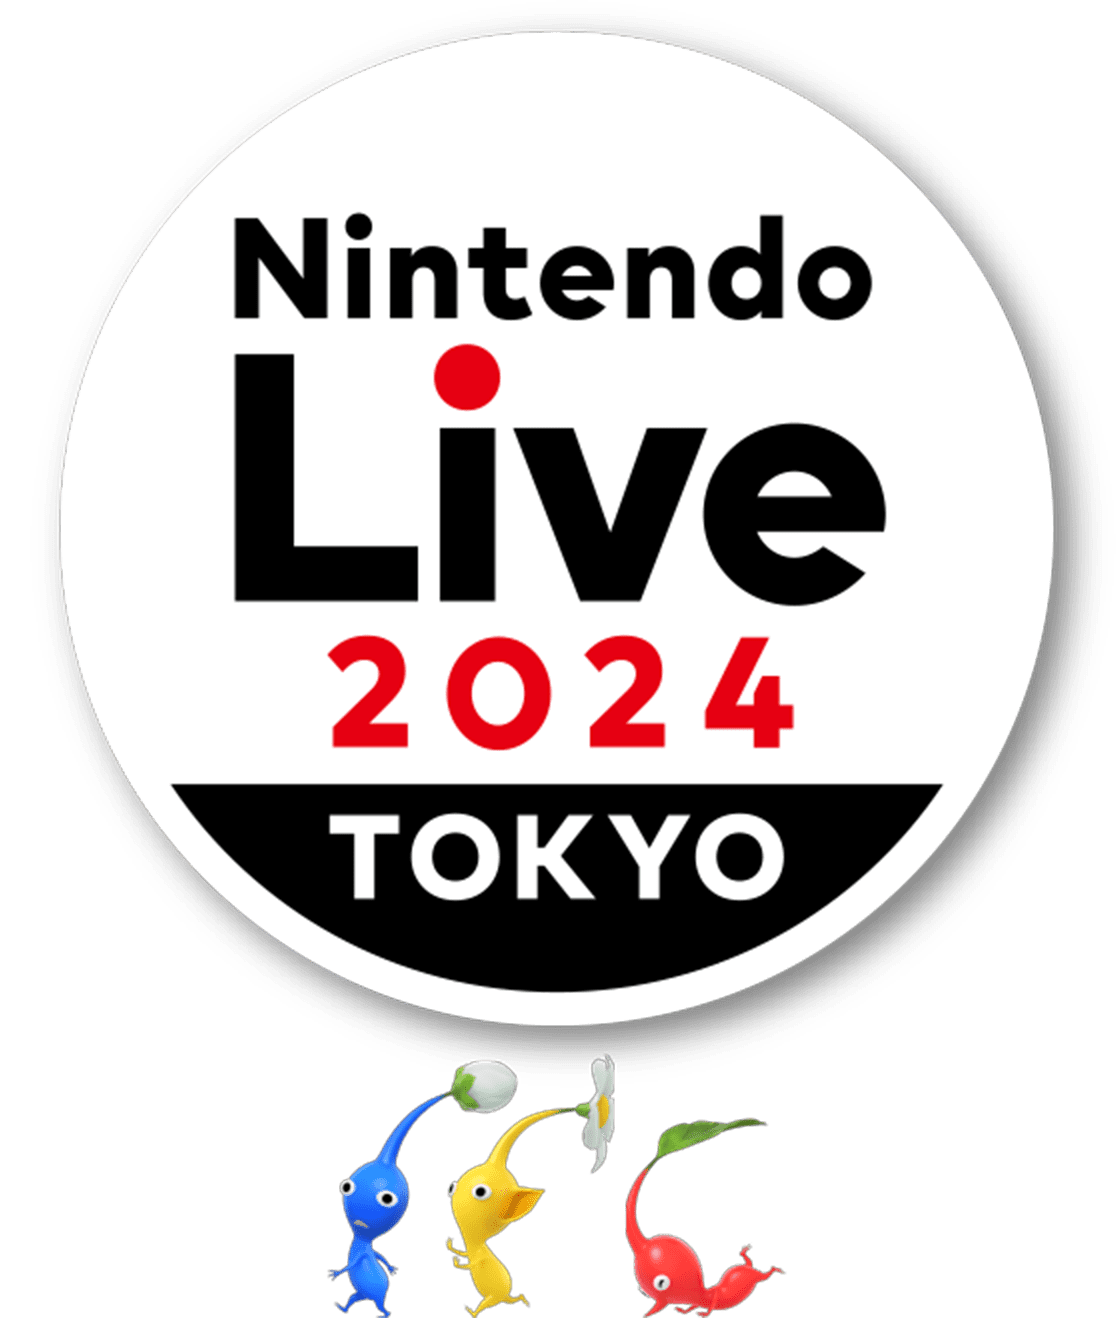 Nintendo Live 2024 TOKYO